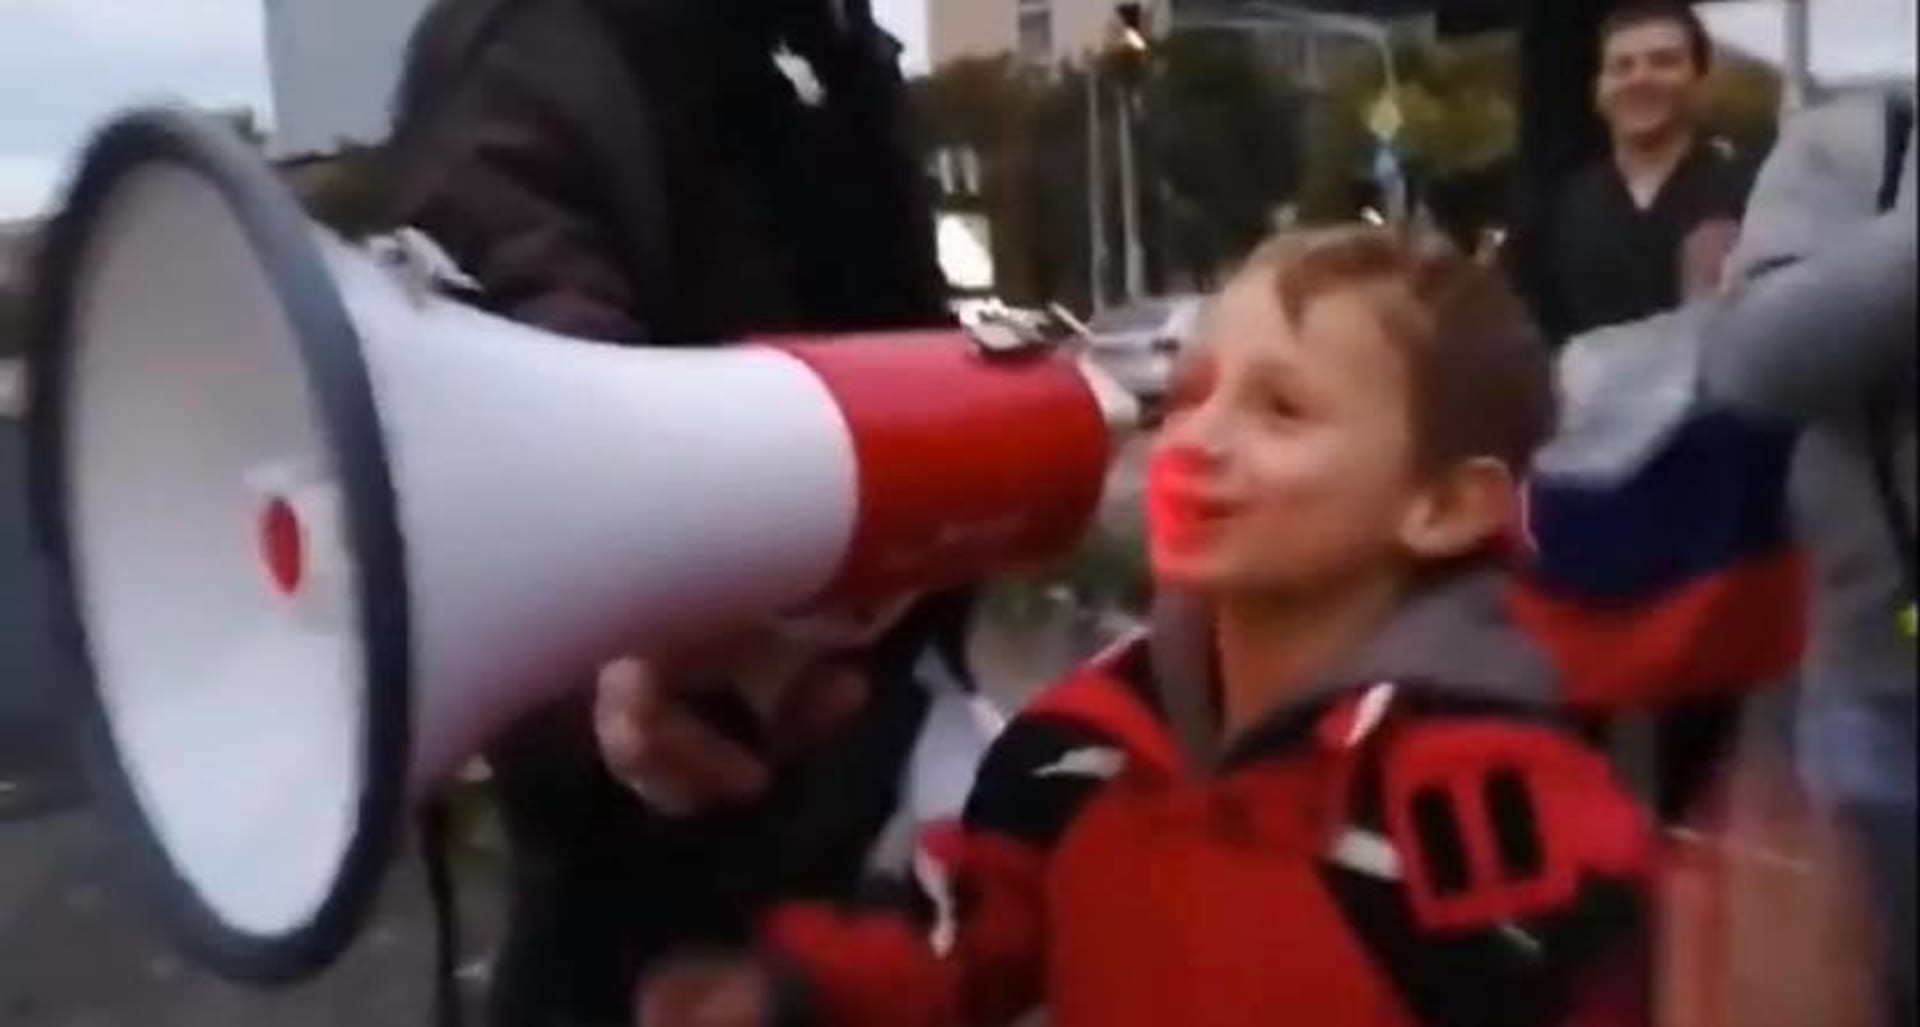 Chlapec je jedním ze tří dětí, které při sobotním protestu skandovaly nadávky do megafonu.